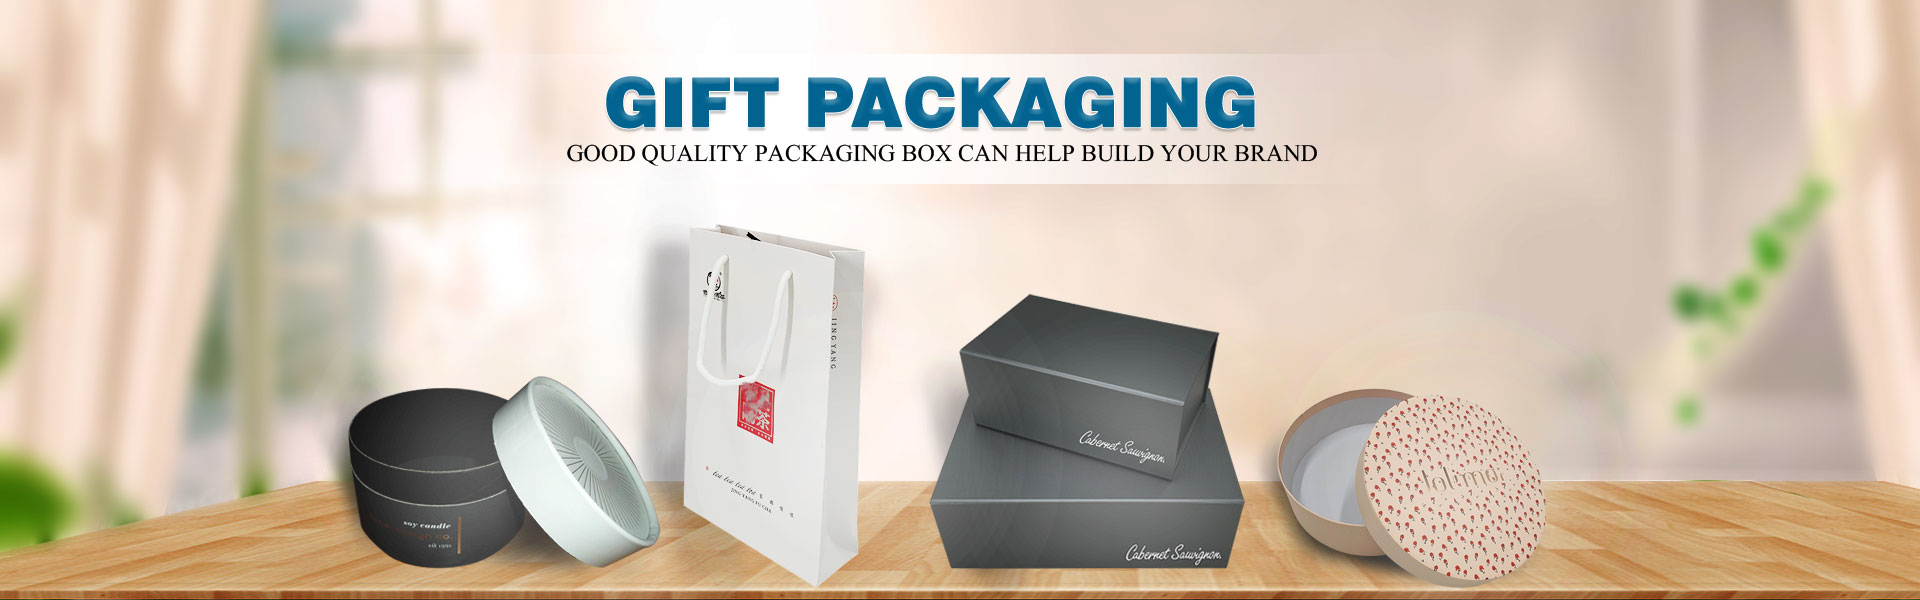 Karton, Geschenkbox, Kuchenbrett,Dongguan Yisheng Packaging Co., Ltd